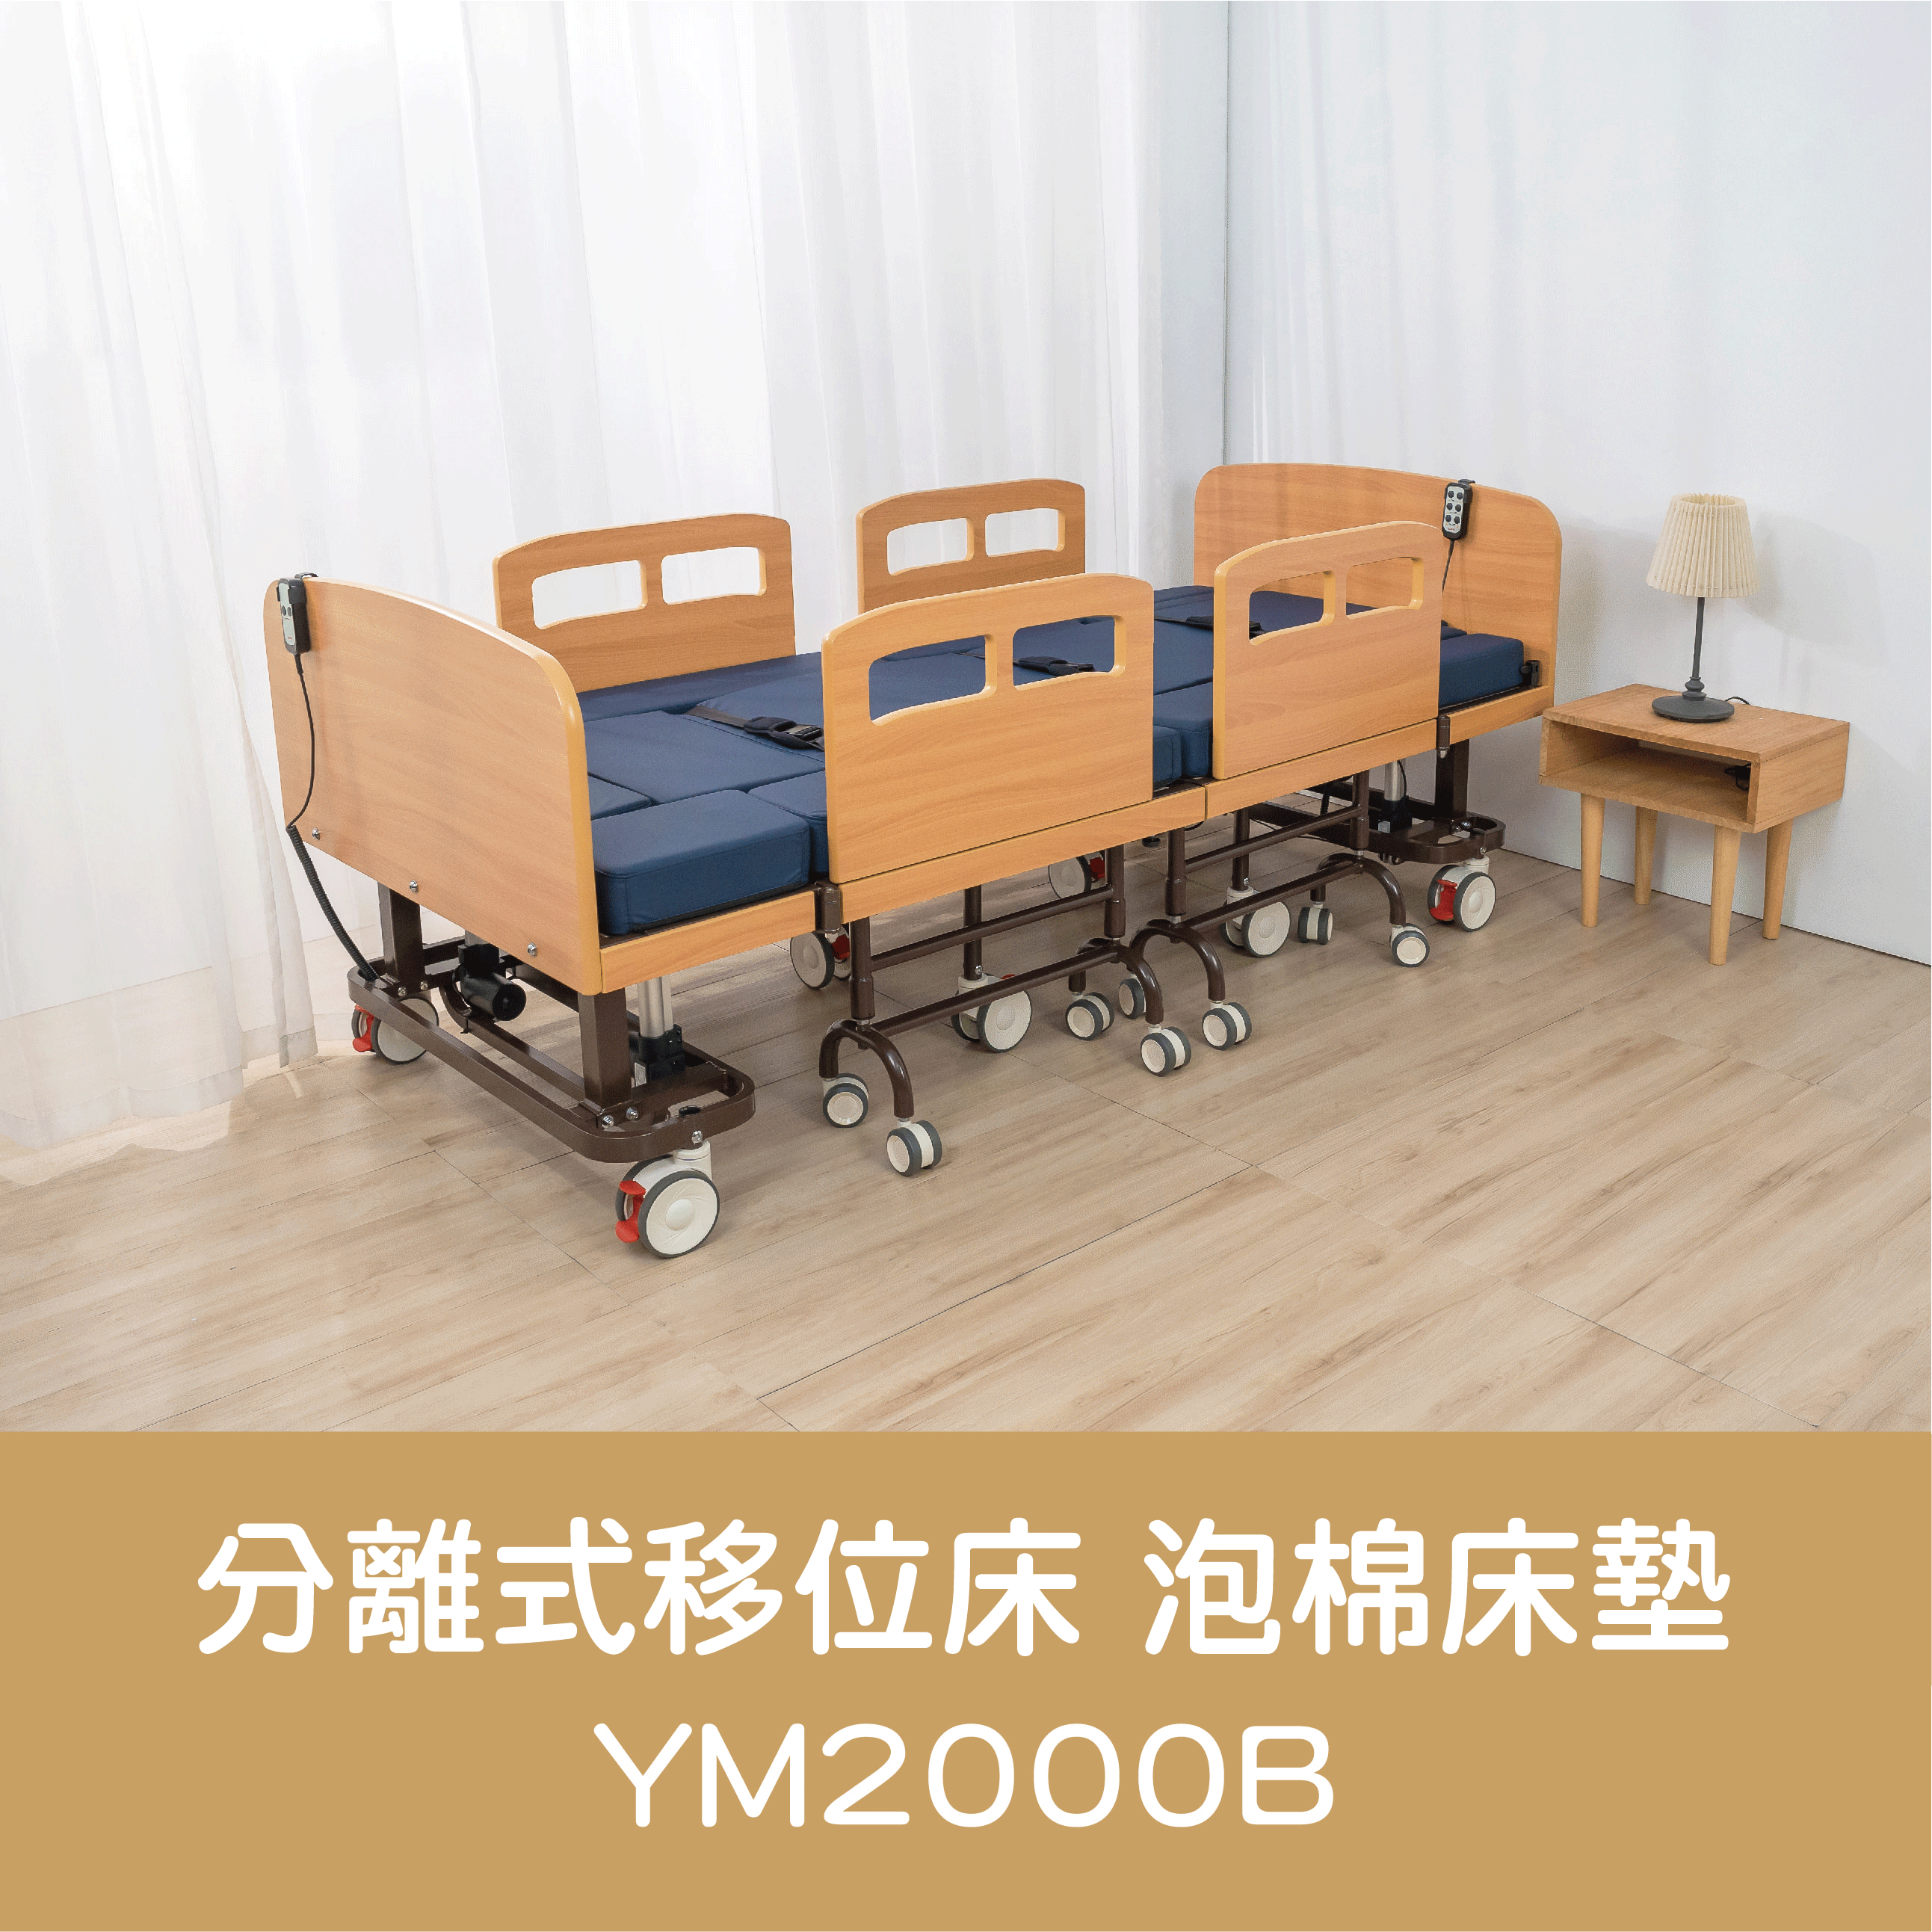 網站產品介紹_YM2000B-動圖1.gif